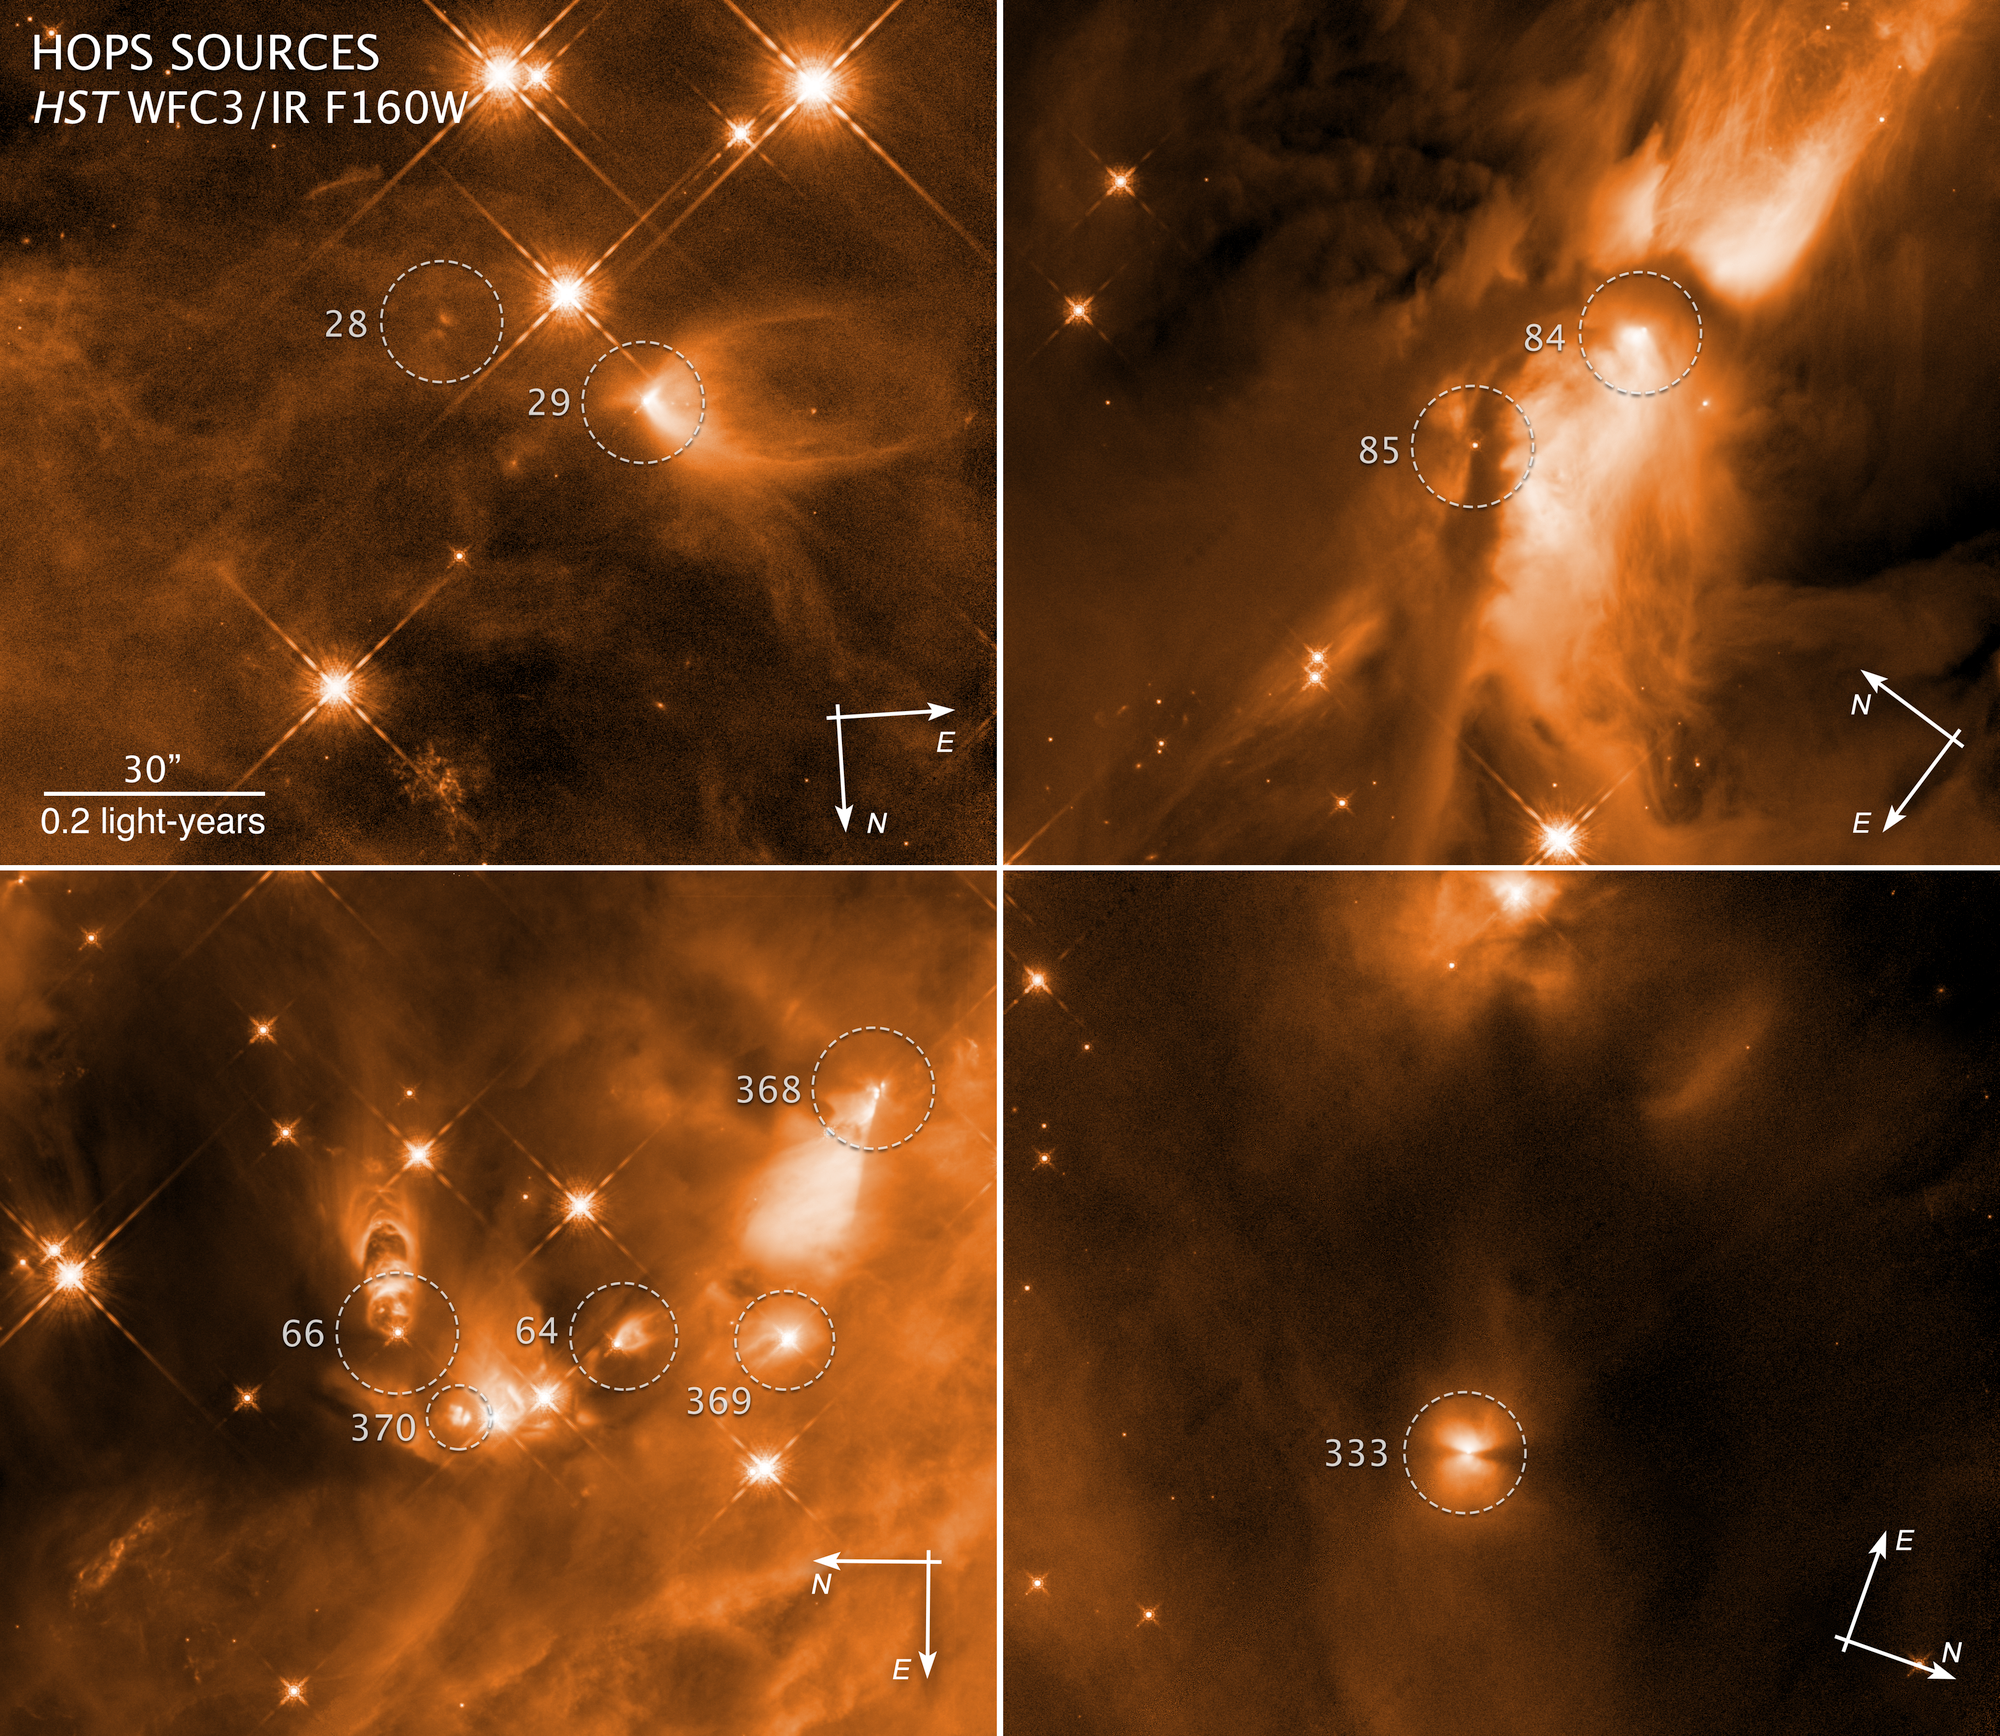 Wypływy materii z rodzących się gwiazd w gwiazdozbiorze Oriona. Cztery zdjęcia uzyskane teleskopem Hubble'a ujawniają narodziny gwiazd z kompleksie mgławic w Orionie - obszarze formowania się gwiazd, który znajduje się najbliższej Ziemi. Protogwiazdy zostały sfotografowane w bliskiej podczerwieni przez kamerę WFC3 w dn. 14 listopada 2009 r. oraz w 2010 r. 25 stycznia, 11 lutego i 11 sierpnia. Źródło: NASA, ESA, STScI, Nolan Habel (UToledo), Tom Megeath (UToledo)